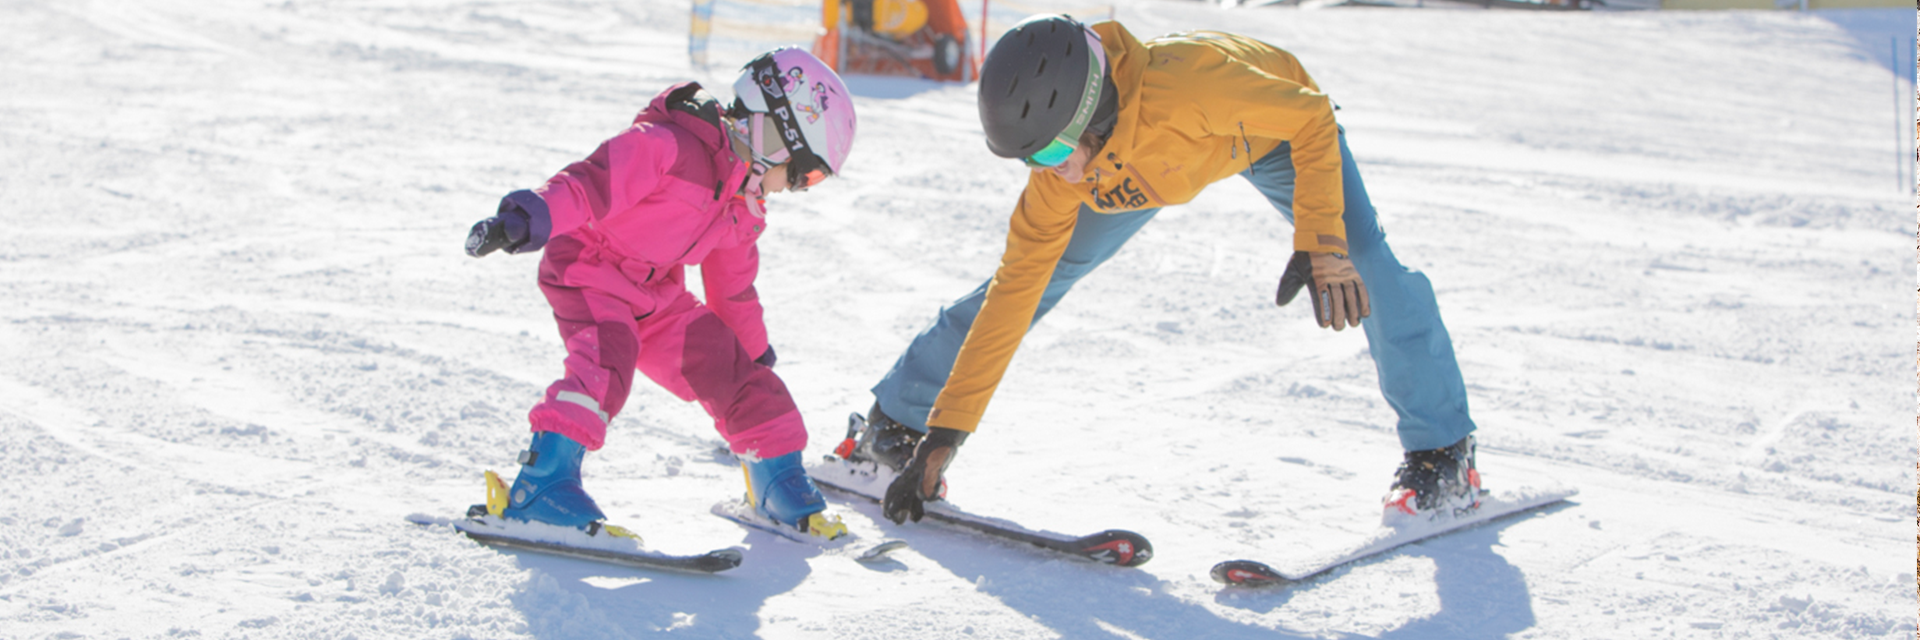 Kinderskischule und Snowboardschule